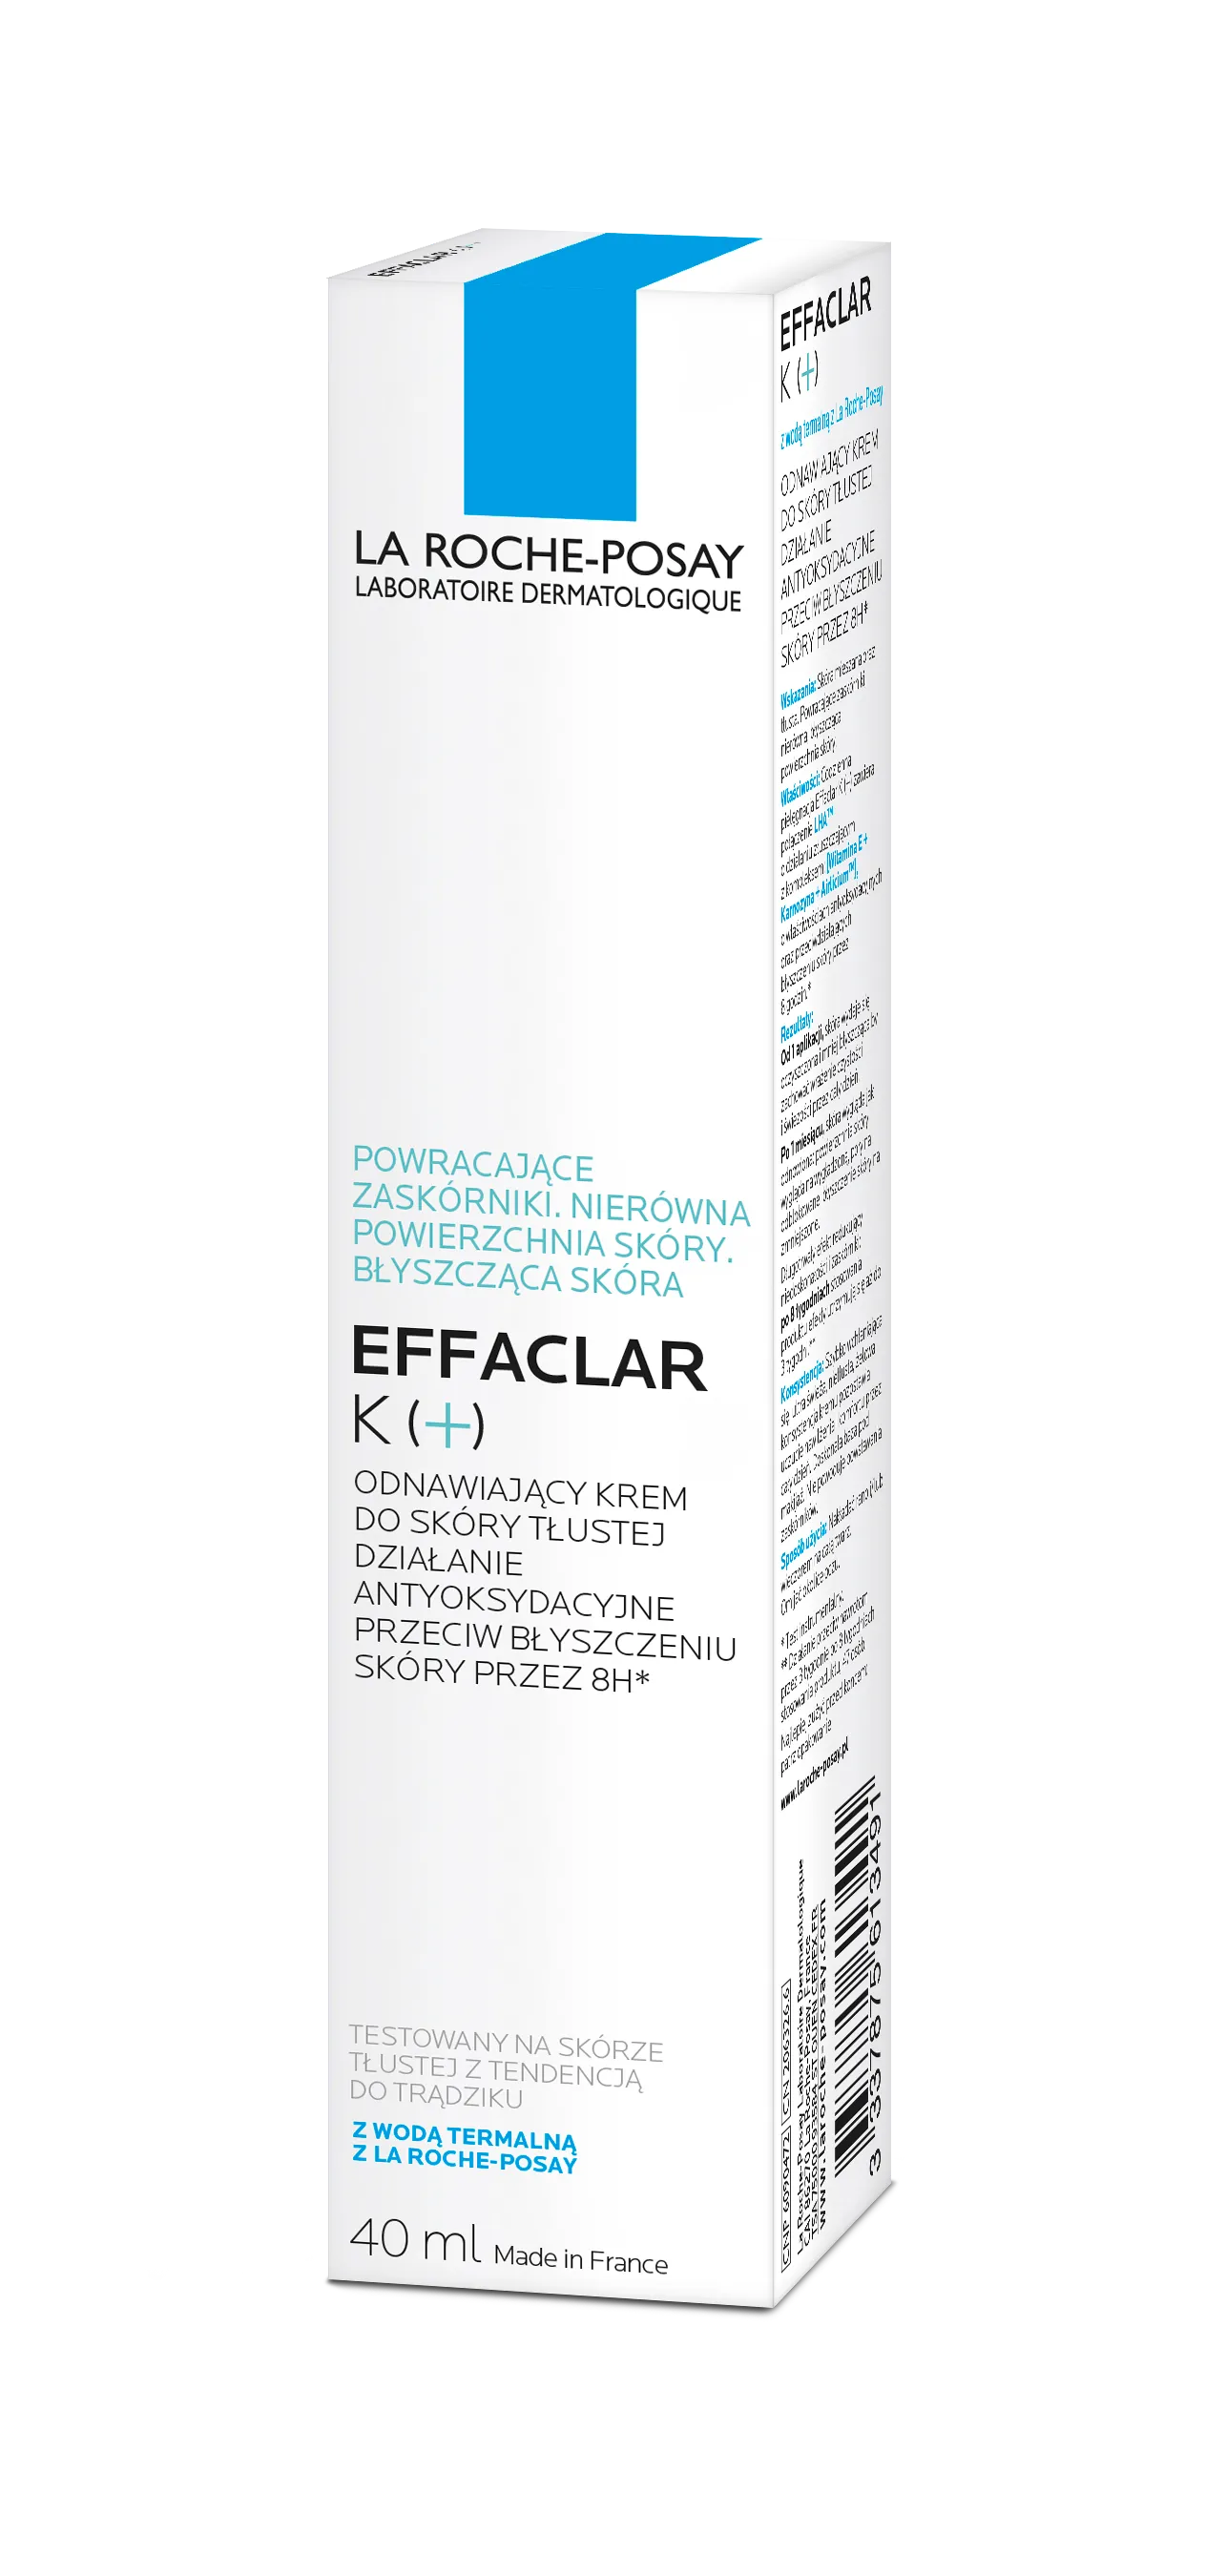 La Roche Posay Effaclar K(+) odnawiający krem przeciw zaskórnikom, 40 ml